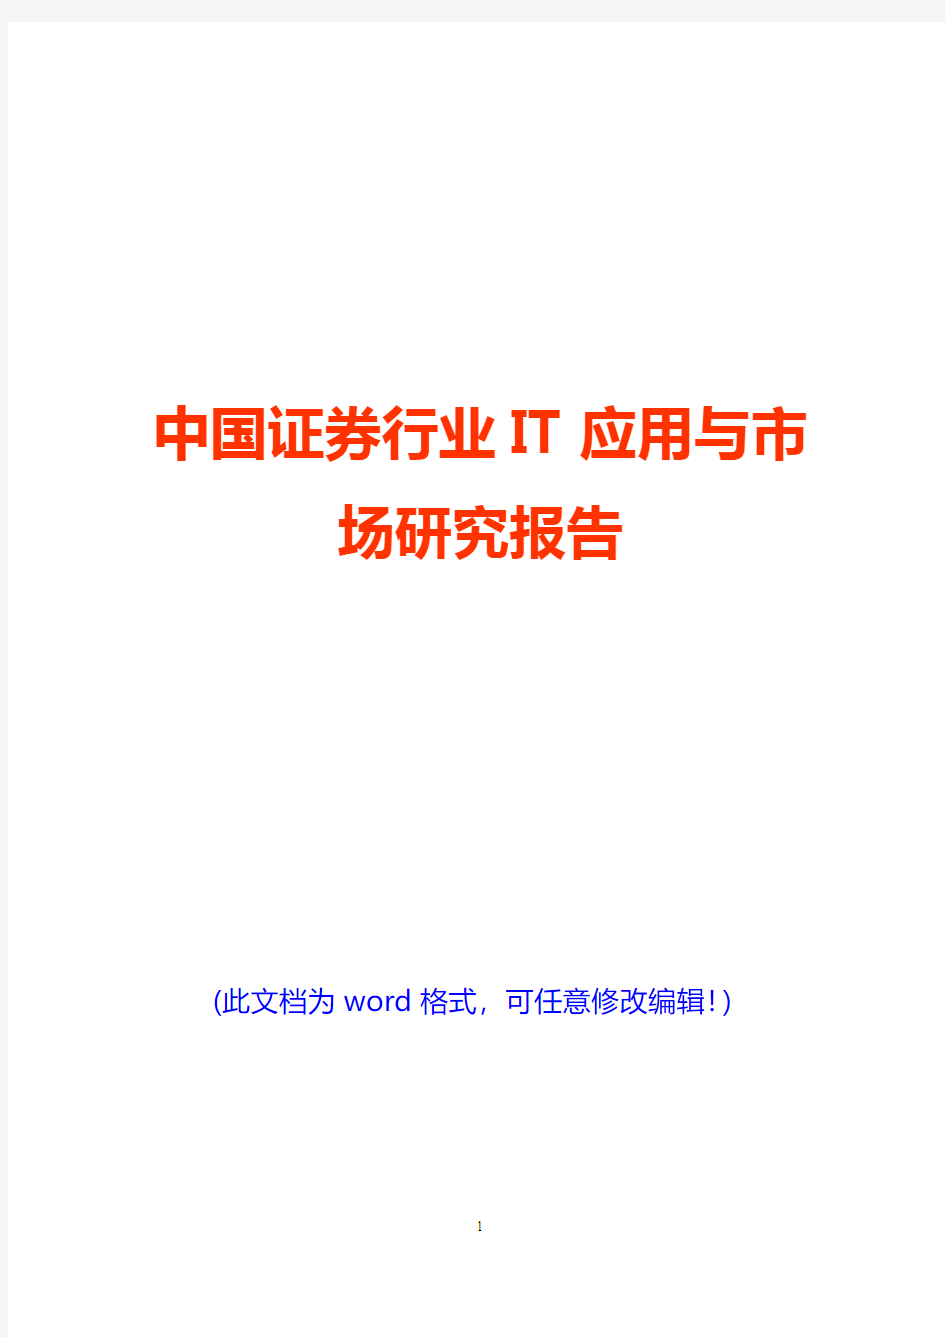 中国证券行业IT应用与市场研究报告(完美版)